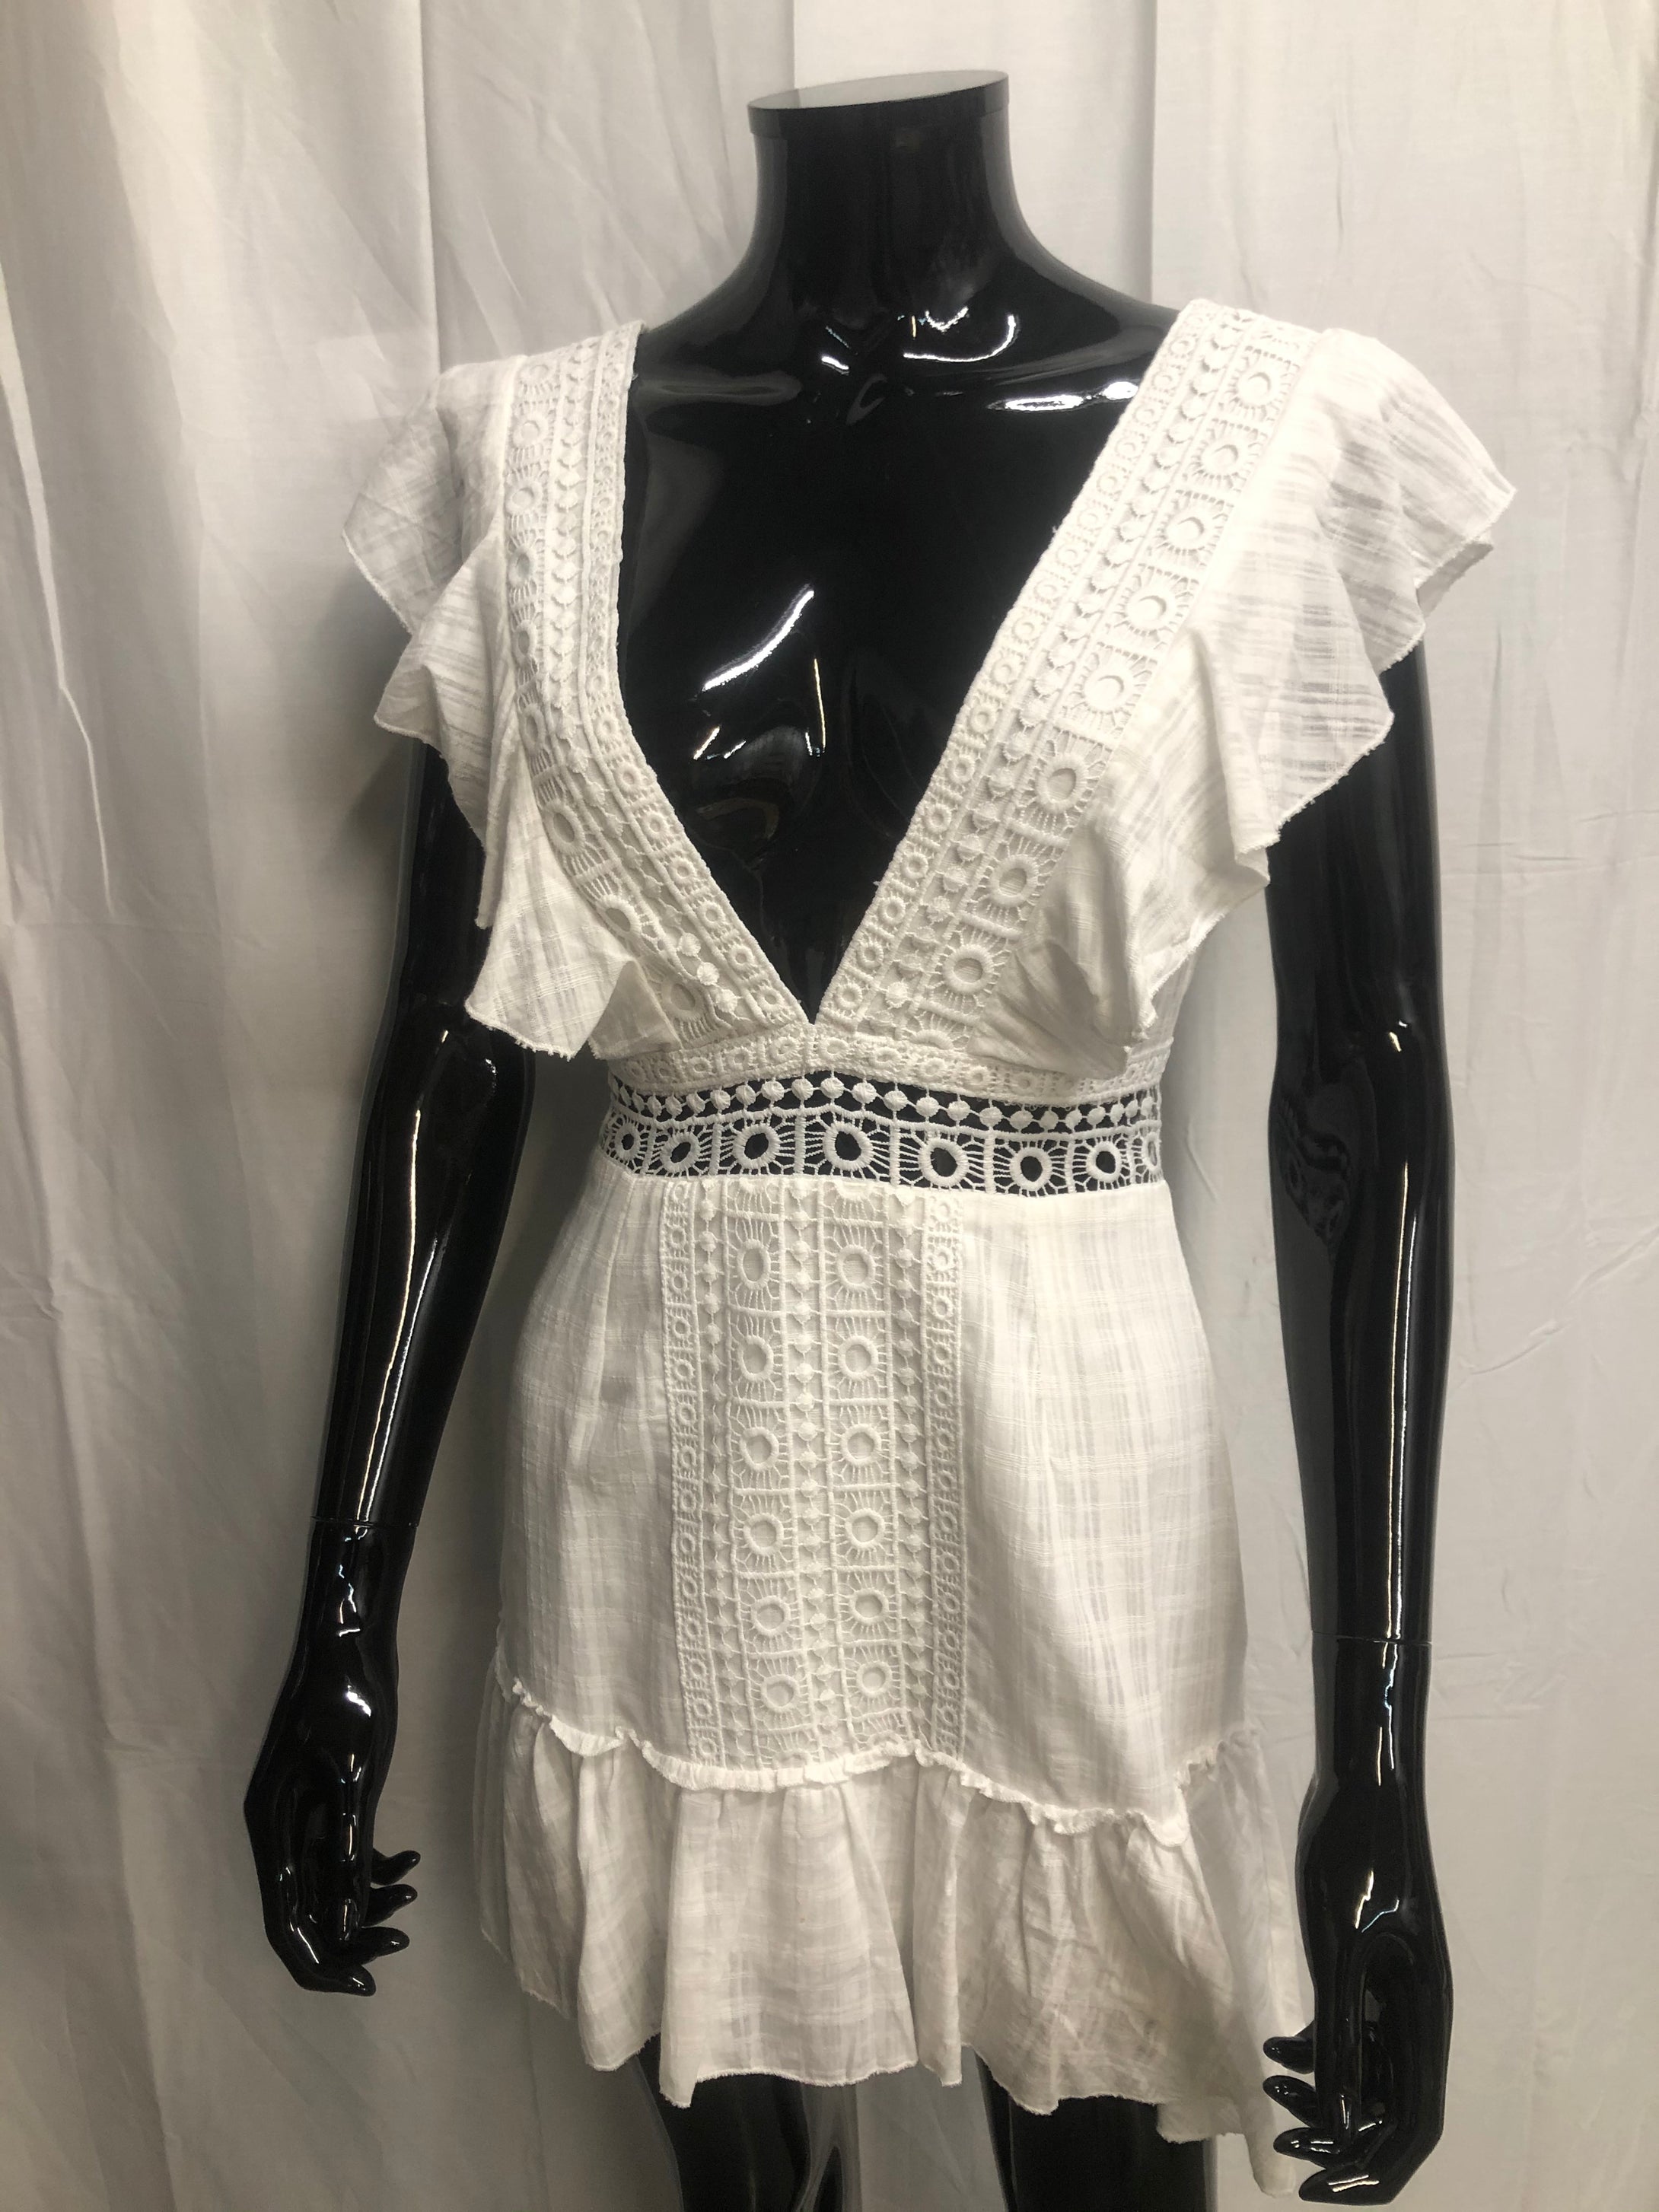 white v neck dress sample sale